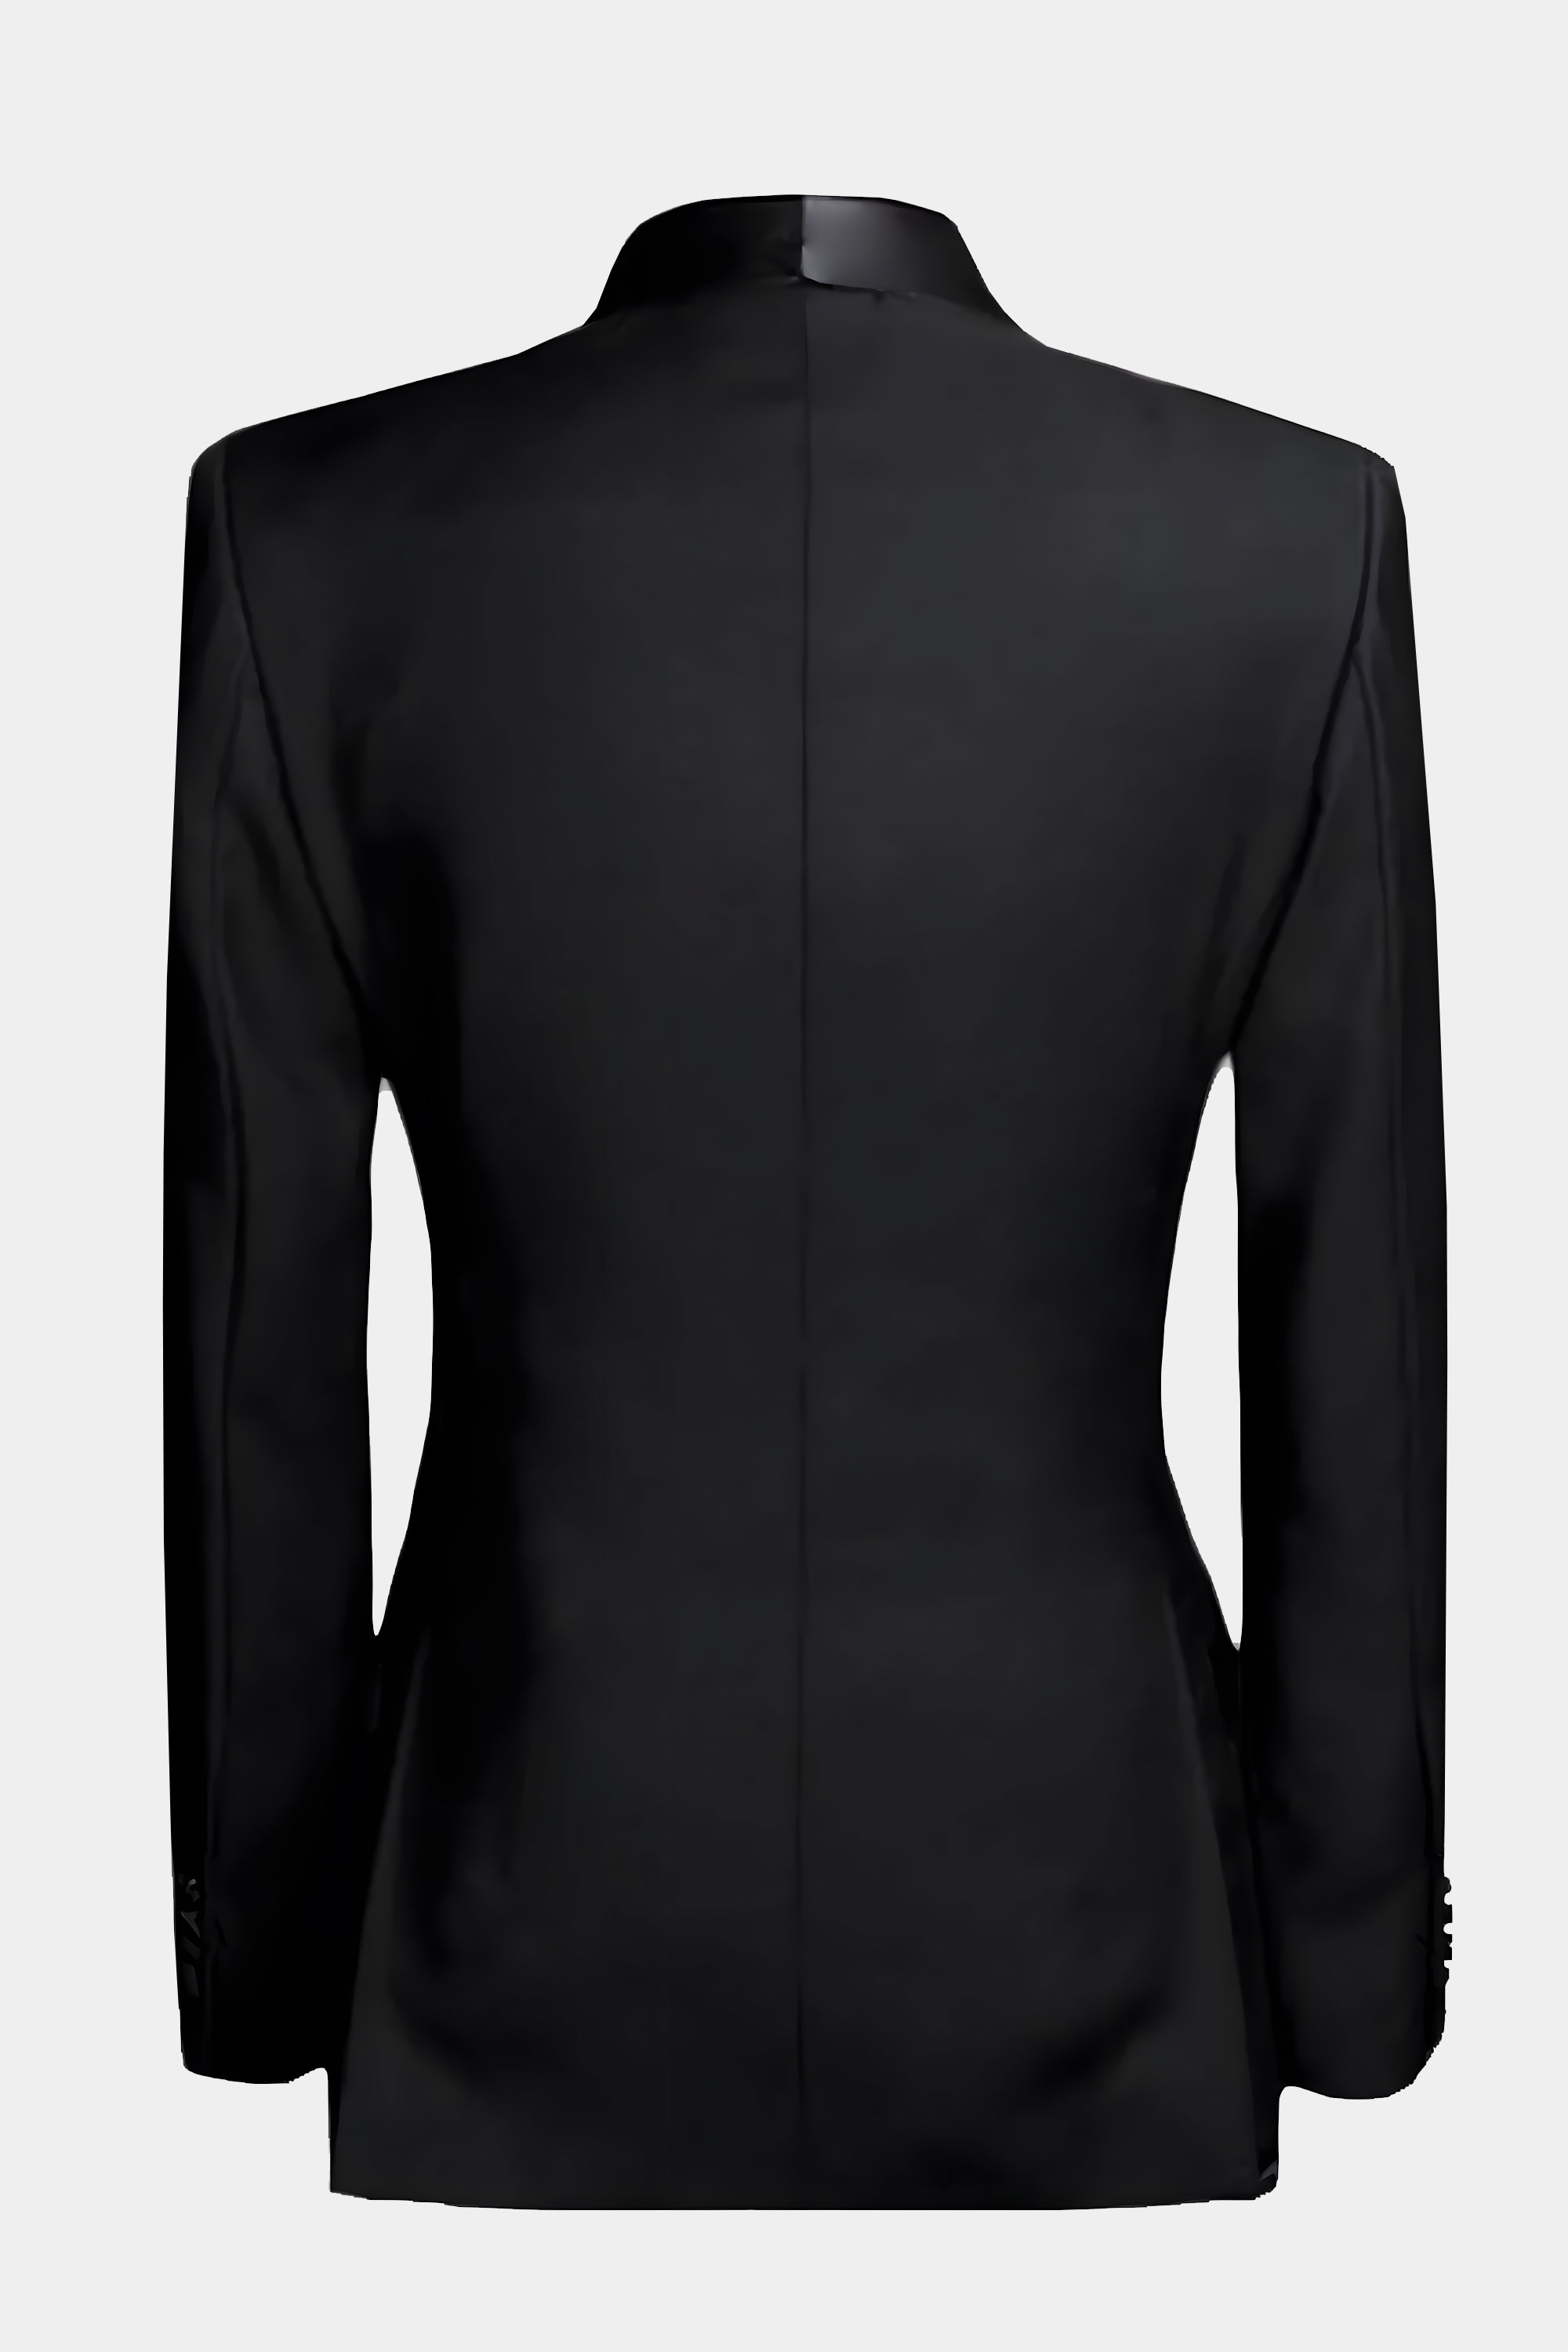 Black-Double-Breasted-Tuxedo-Jacket-from-Gentlemansguru.Com